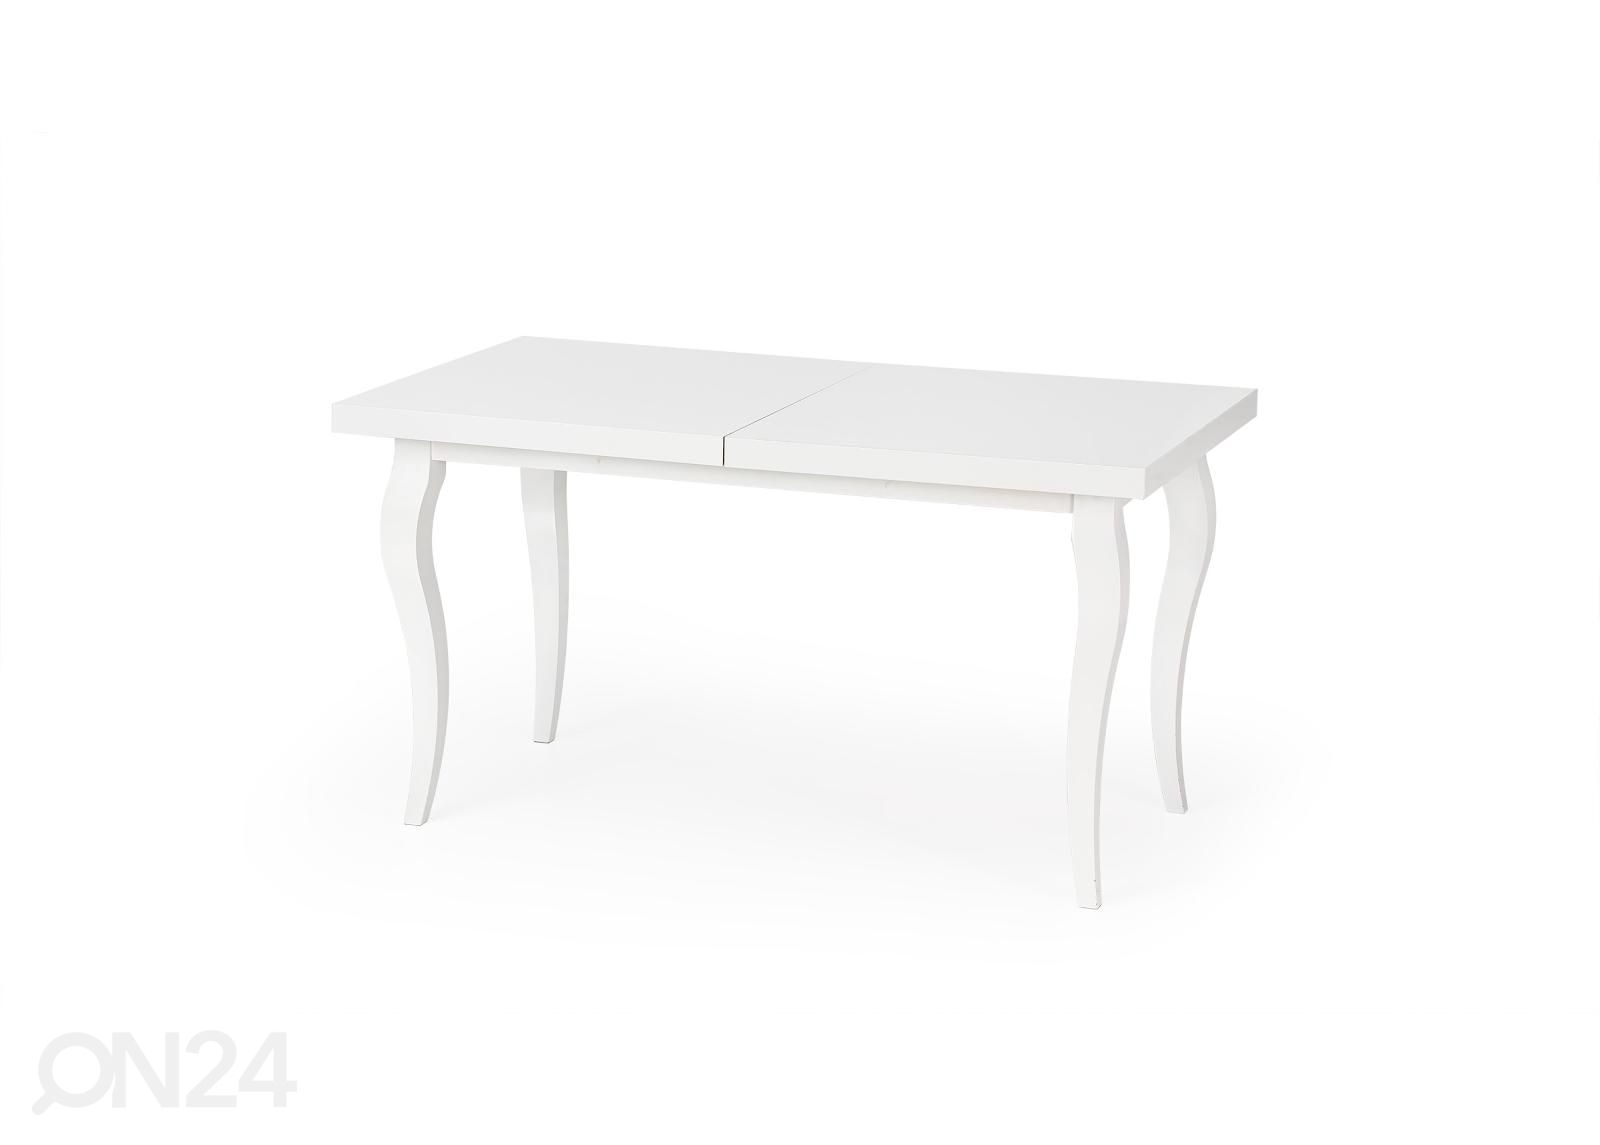 Удлиняющийся обеденный стол 140/180x80 cm увеличить размеры